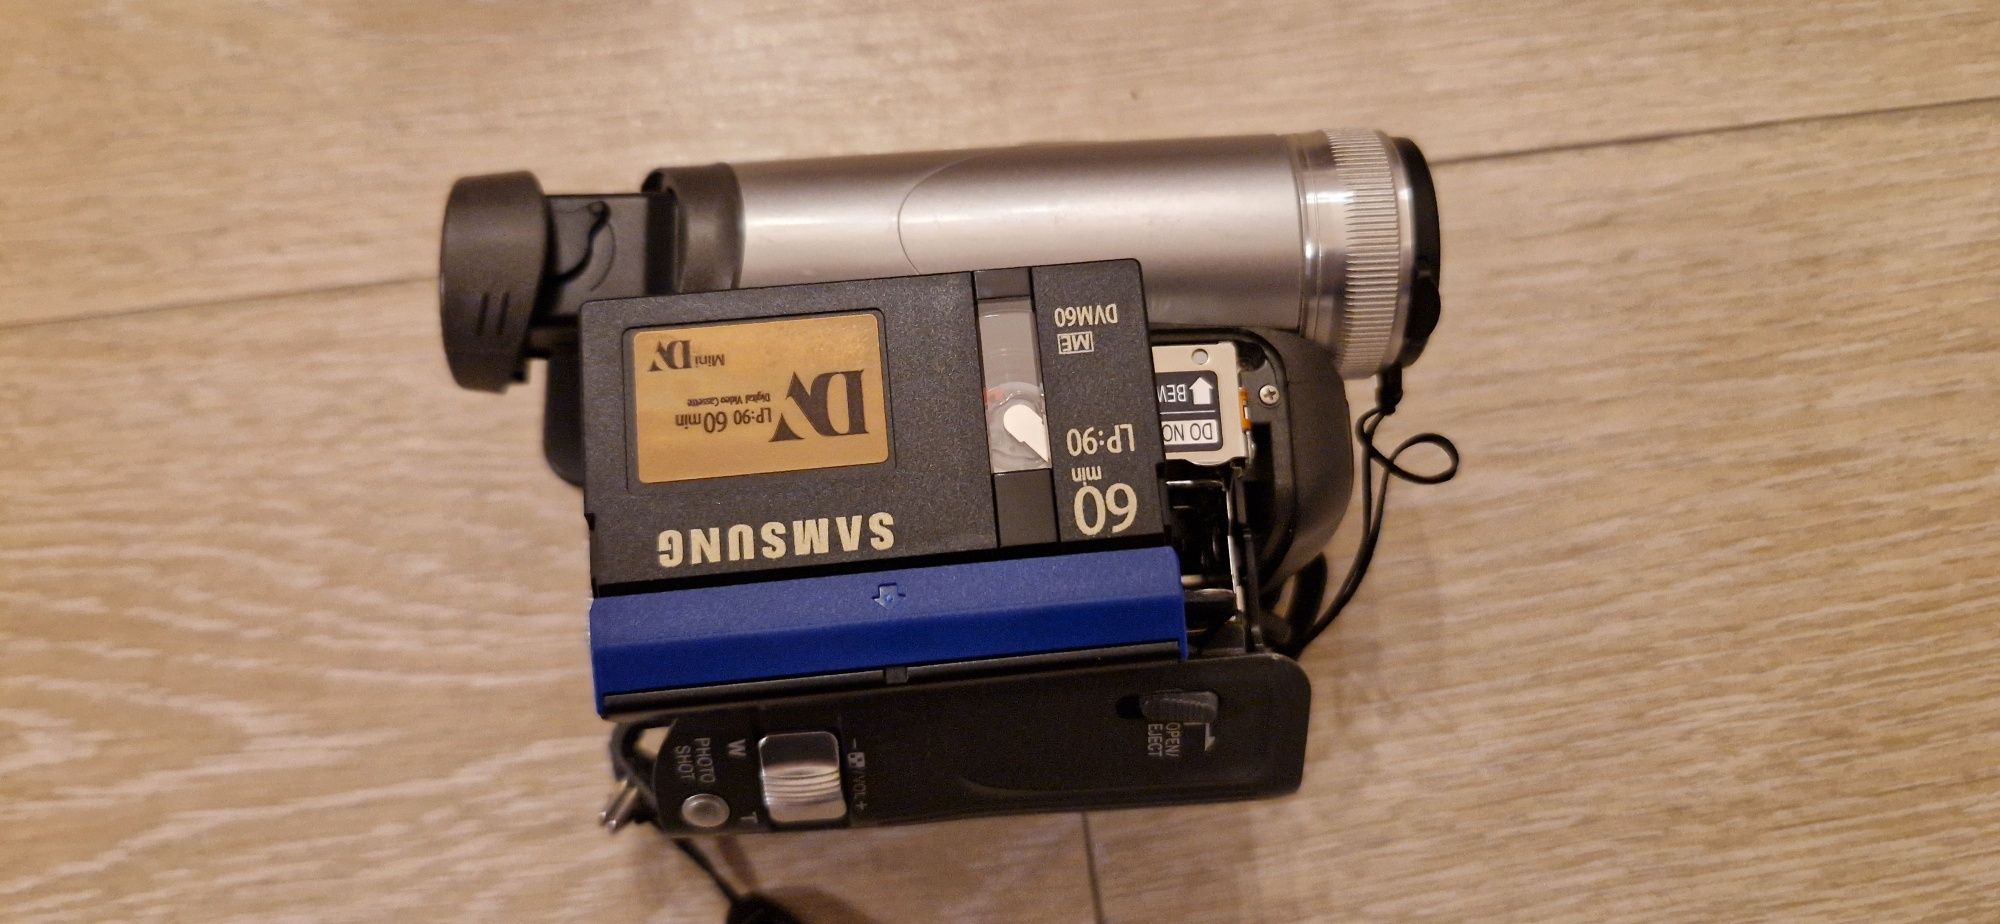 Camera video Panasonic miniDV, model NV-GS21E